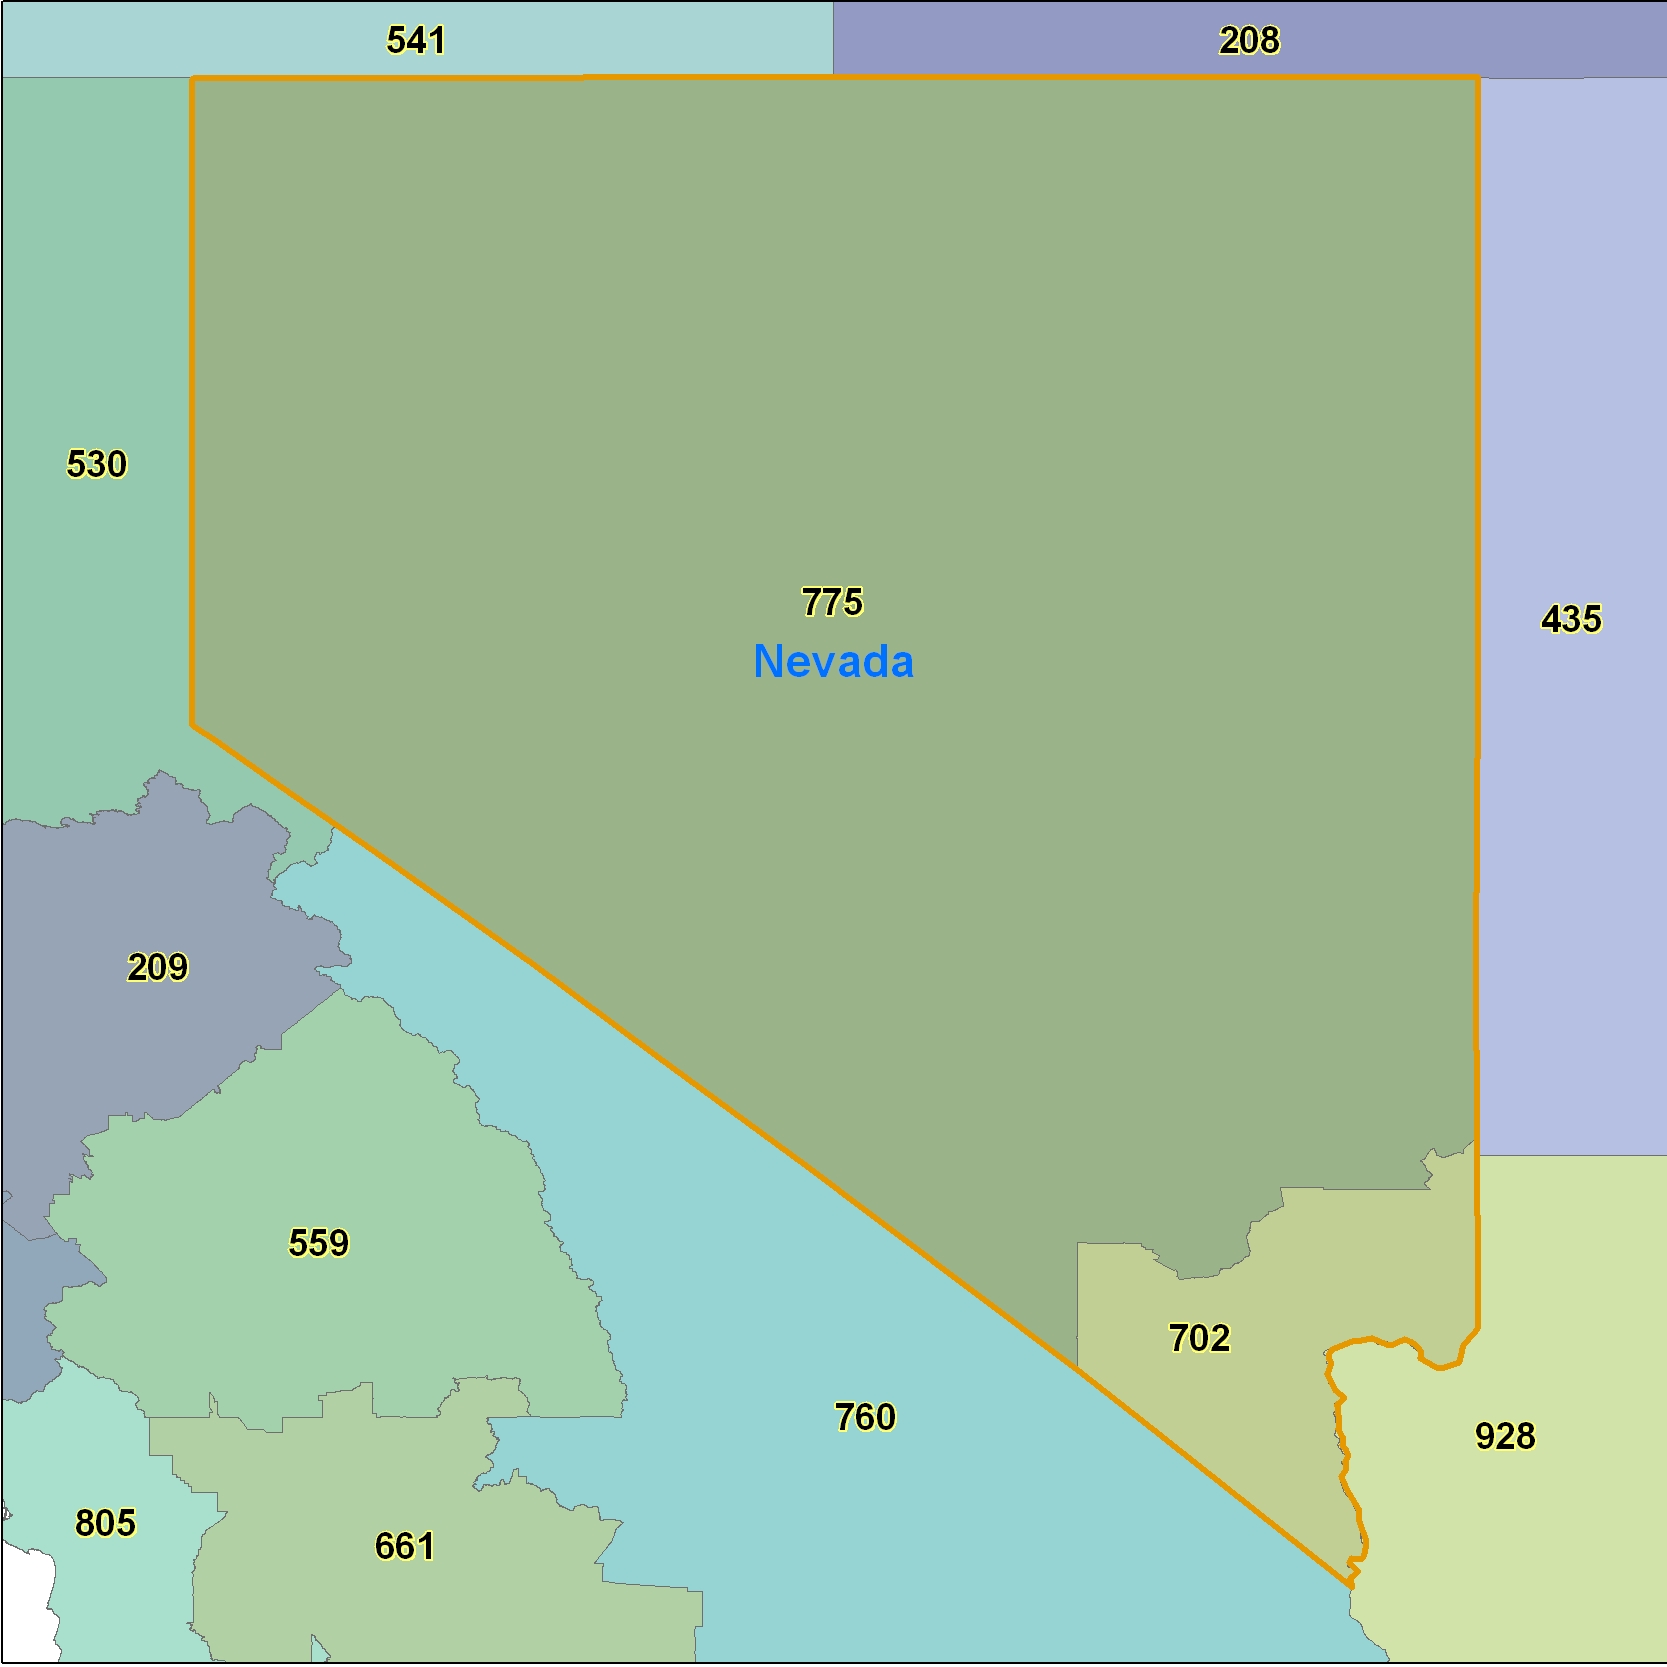 Nevada Area Code Maps Nevada Telephone Area Code Maps Free Nevada